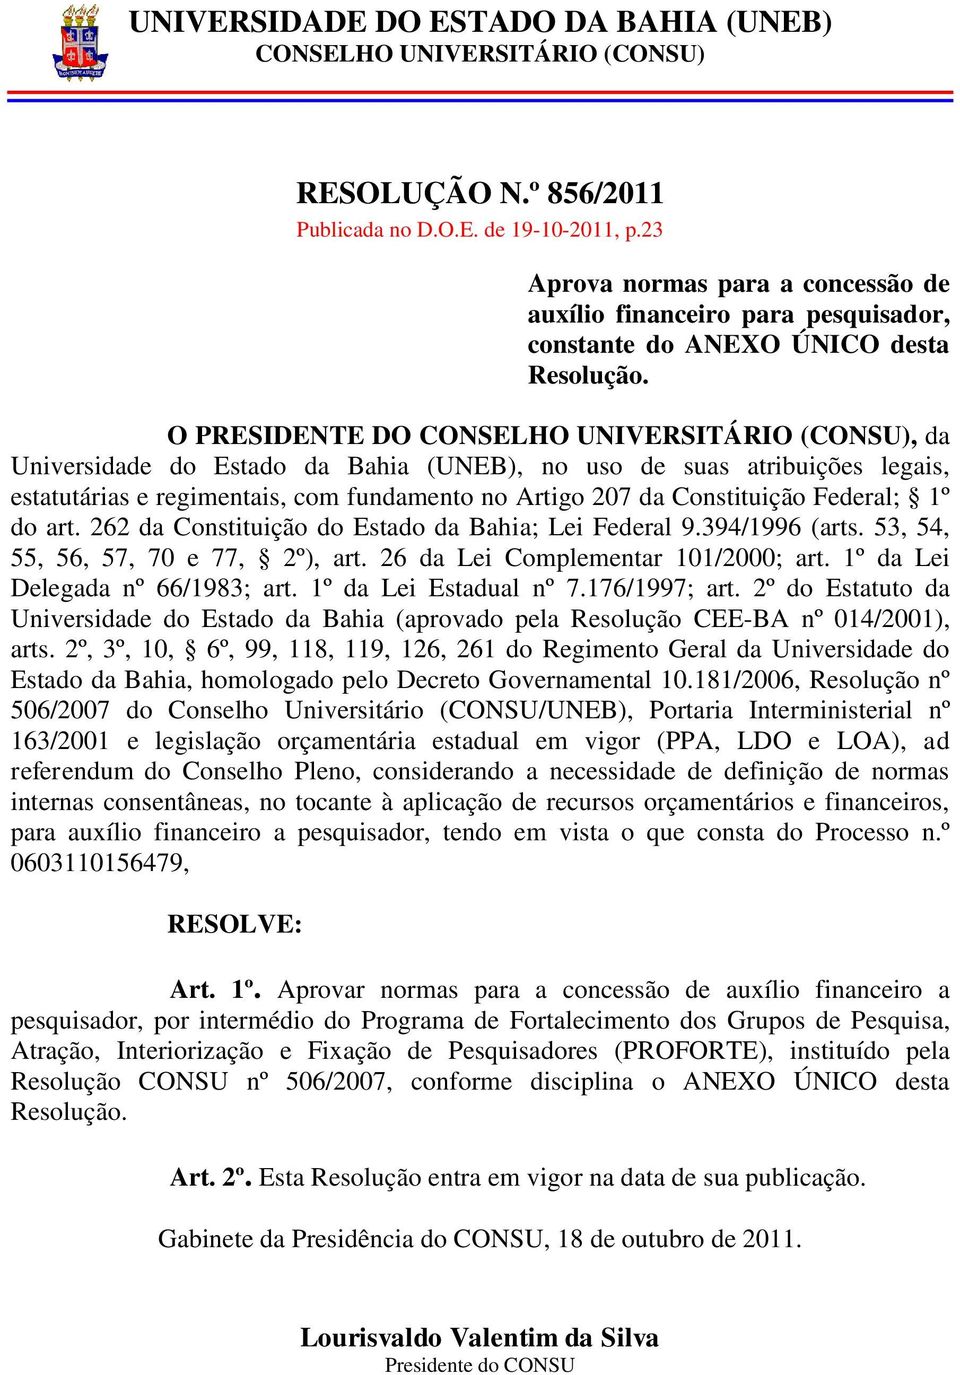 O PRESIDENTE DO CONSELHO UNIVERSITÁRIO (CONSU), da Universidade do Estado da Bahia (UNEB), no uso de suas atribuições legais, estatutárias e regimentais, com fundamento no Artigo 207 da Constituição